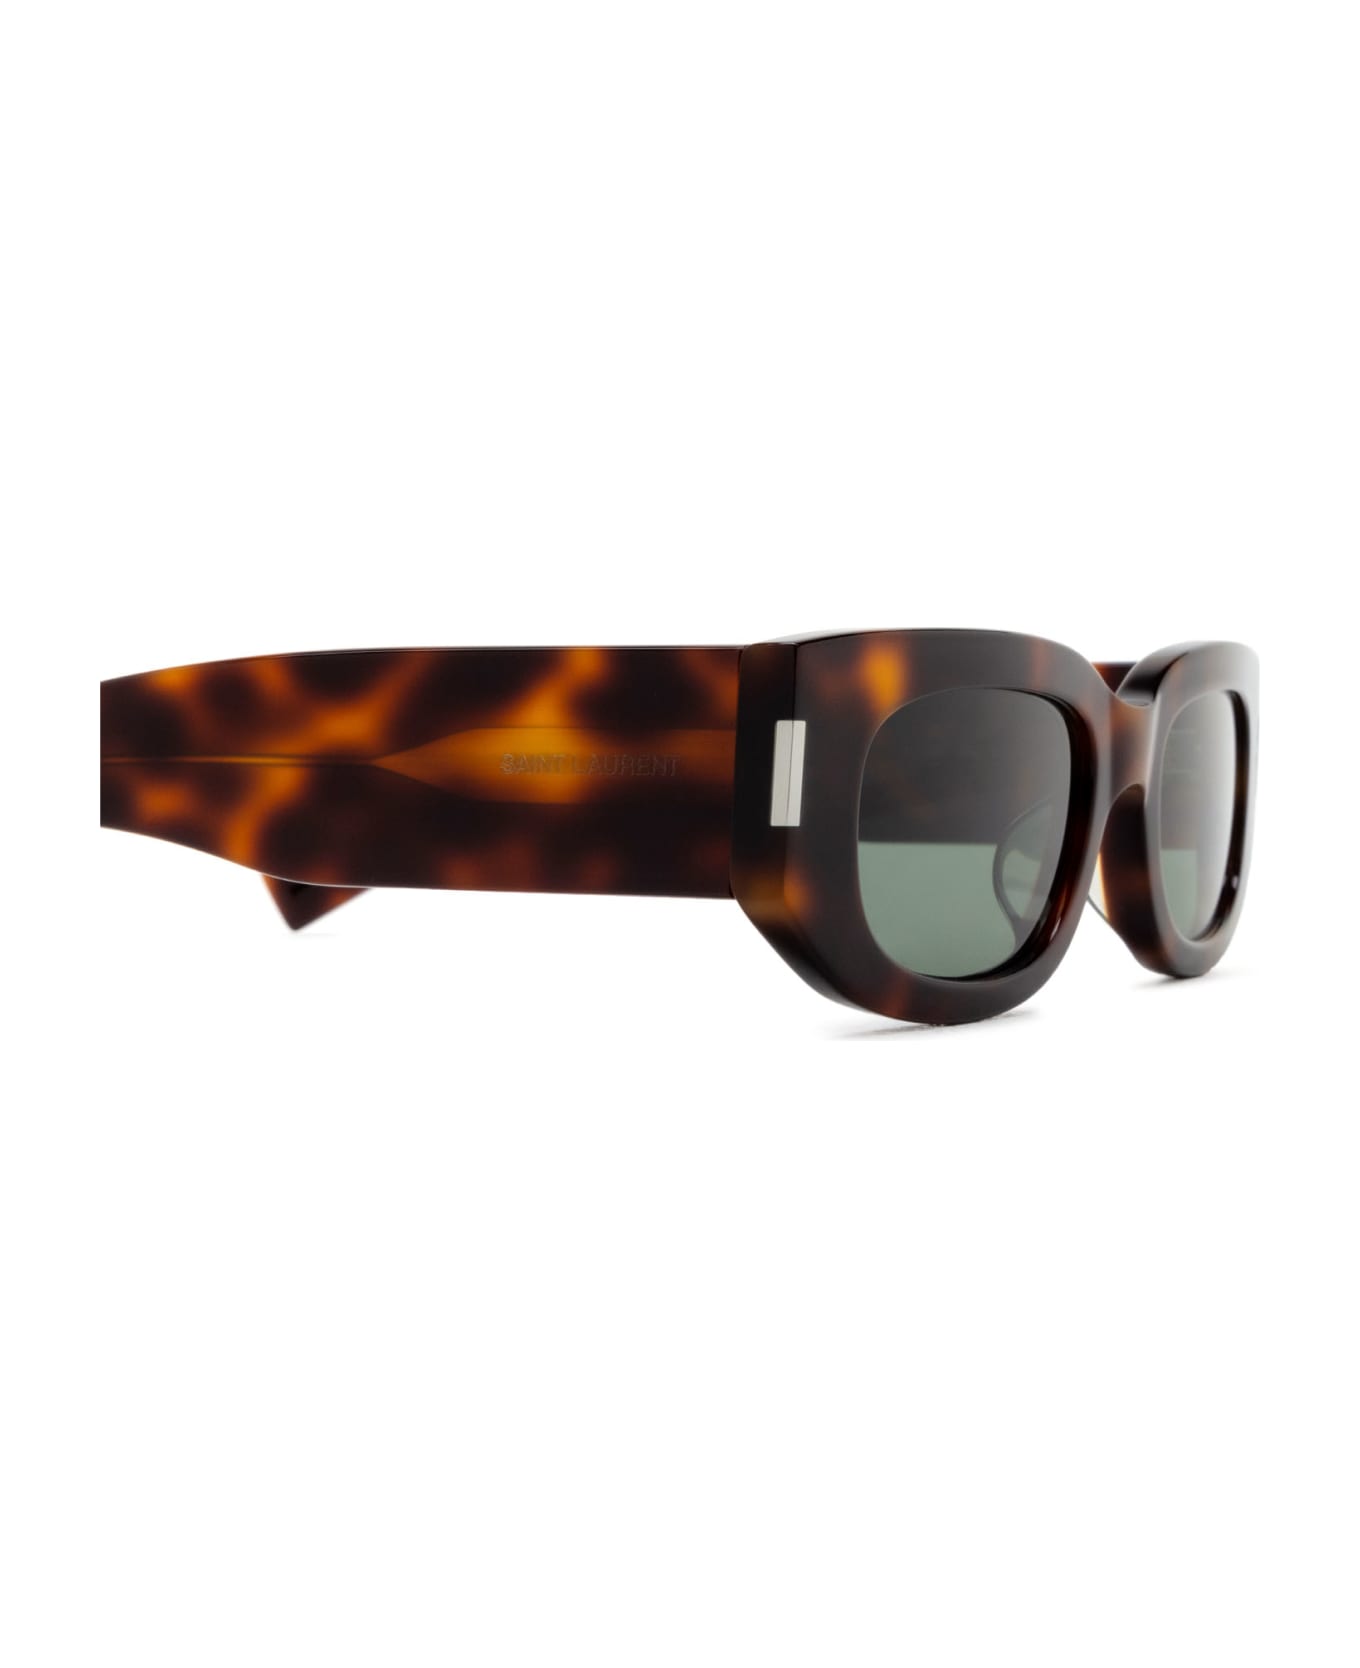 Saint Laurent Eyewear Sl 697 Havana Sunglasses - Havana